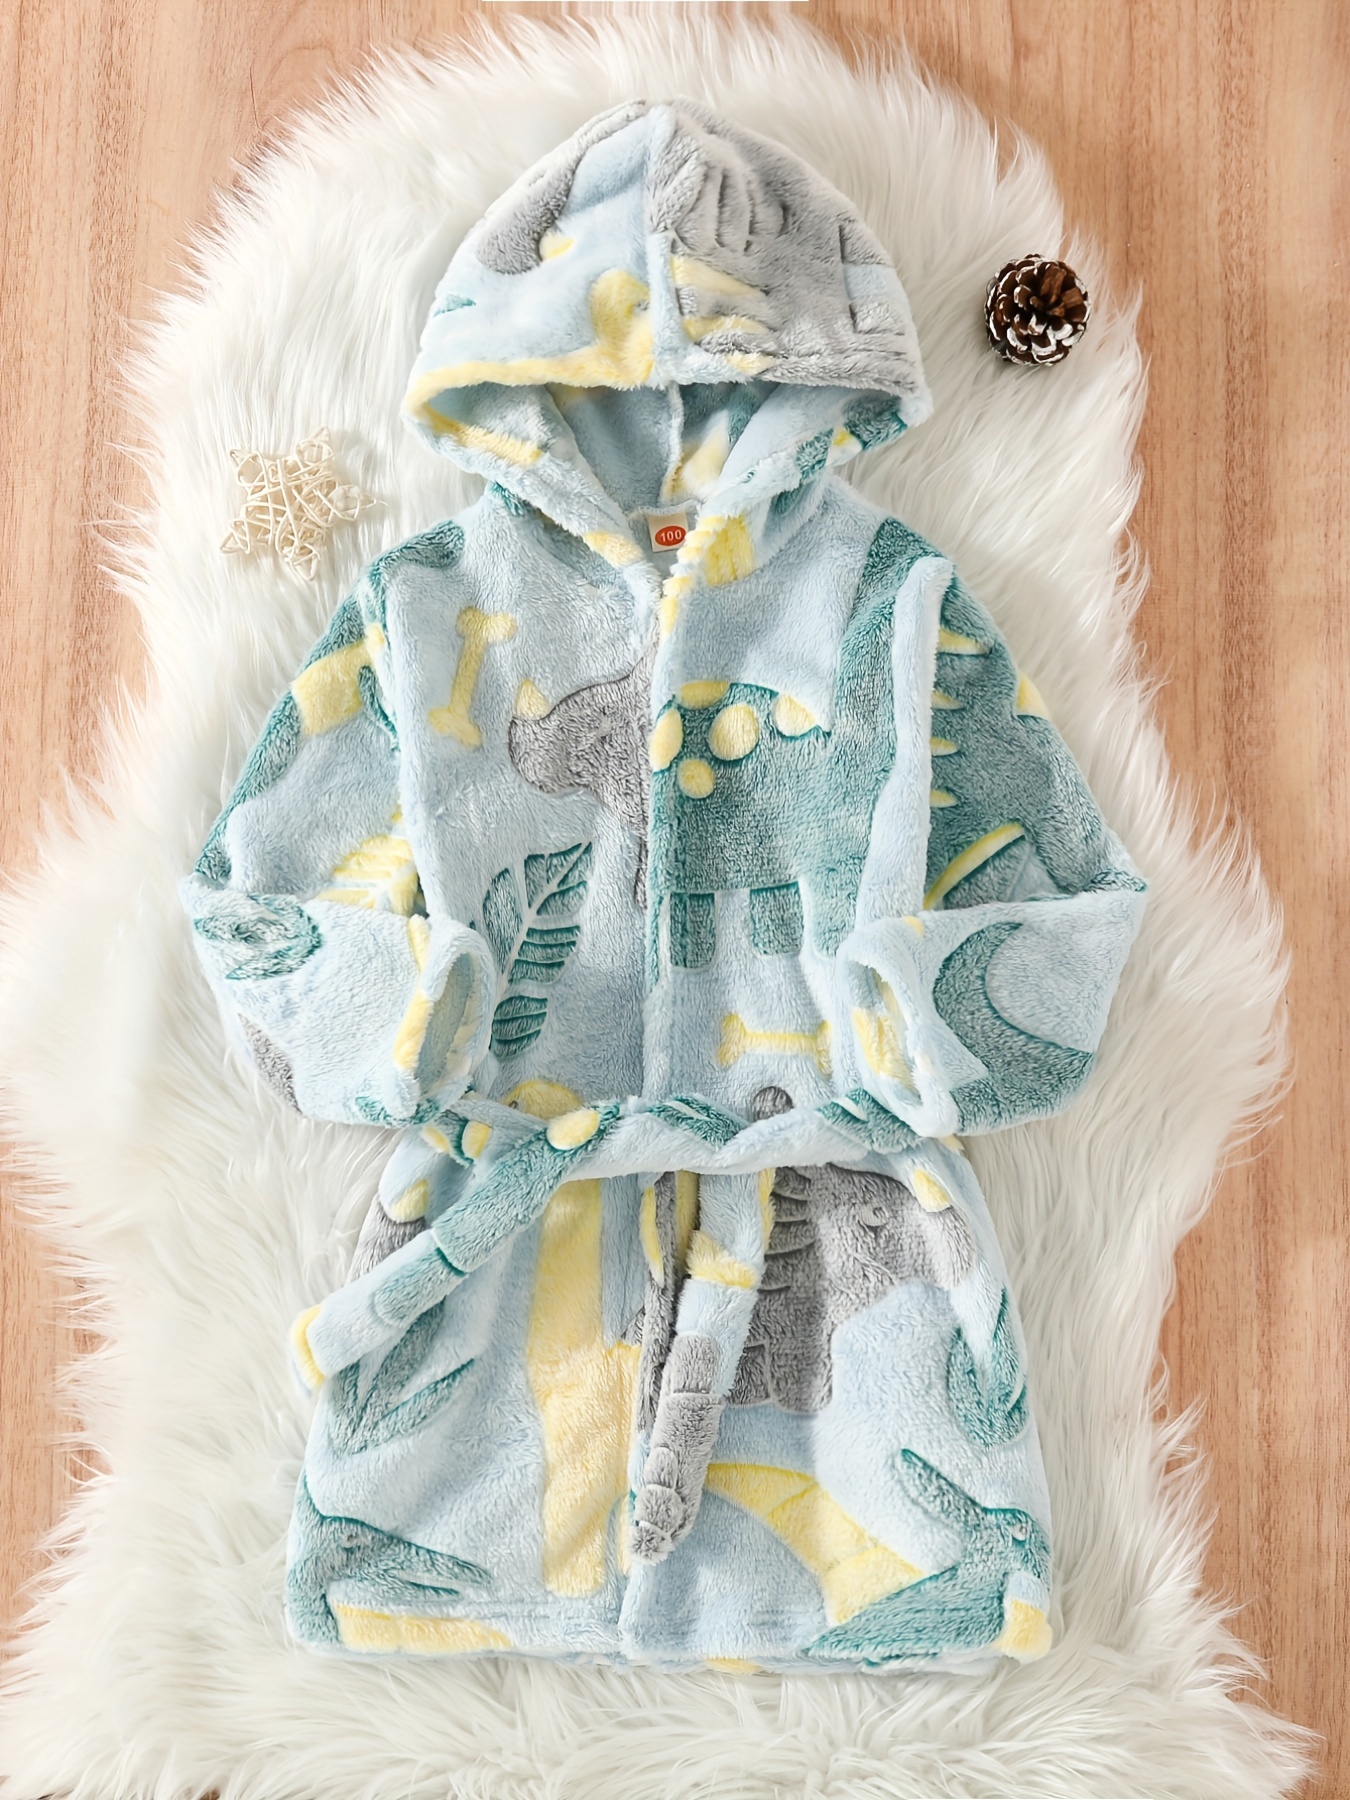 De invierno para niños Pijamas de franela ropa de noche Niñas Niños Pijama  polar de coral de los niños pijamas de niños 3-13T ropa ropa de dormir /